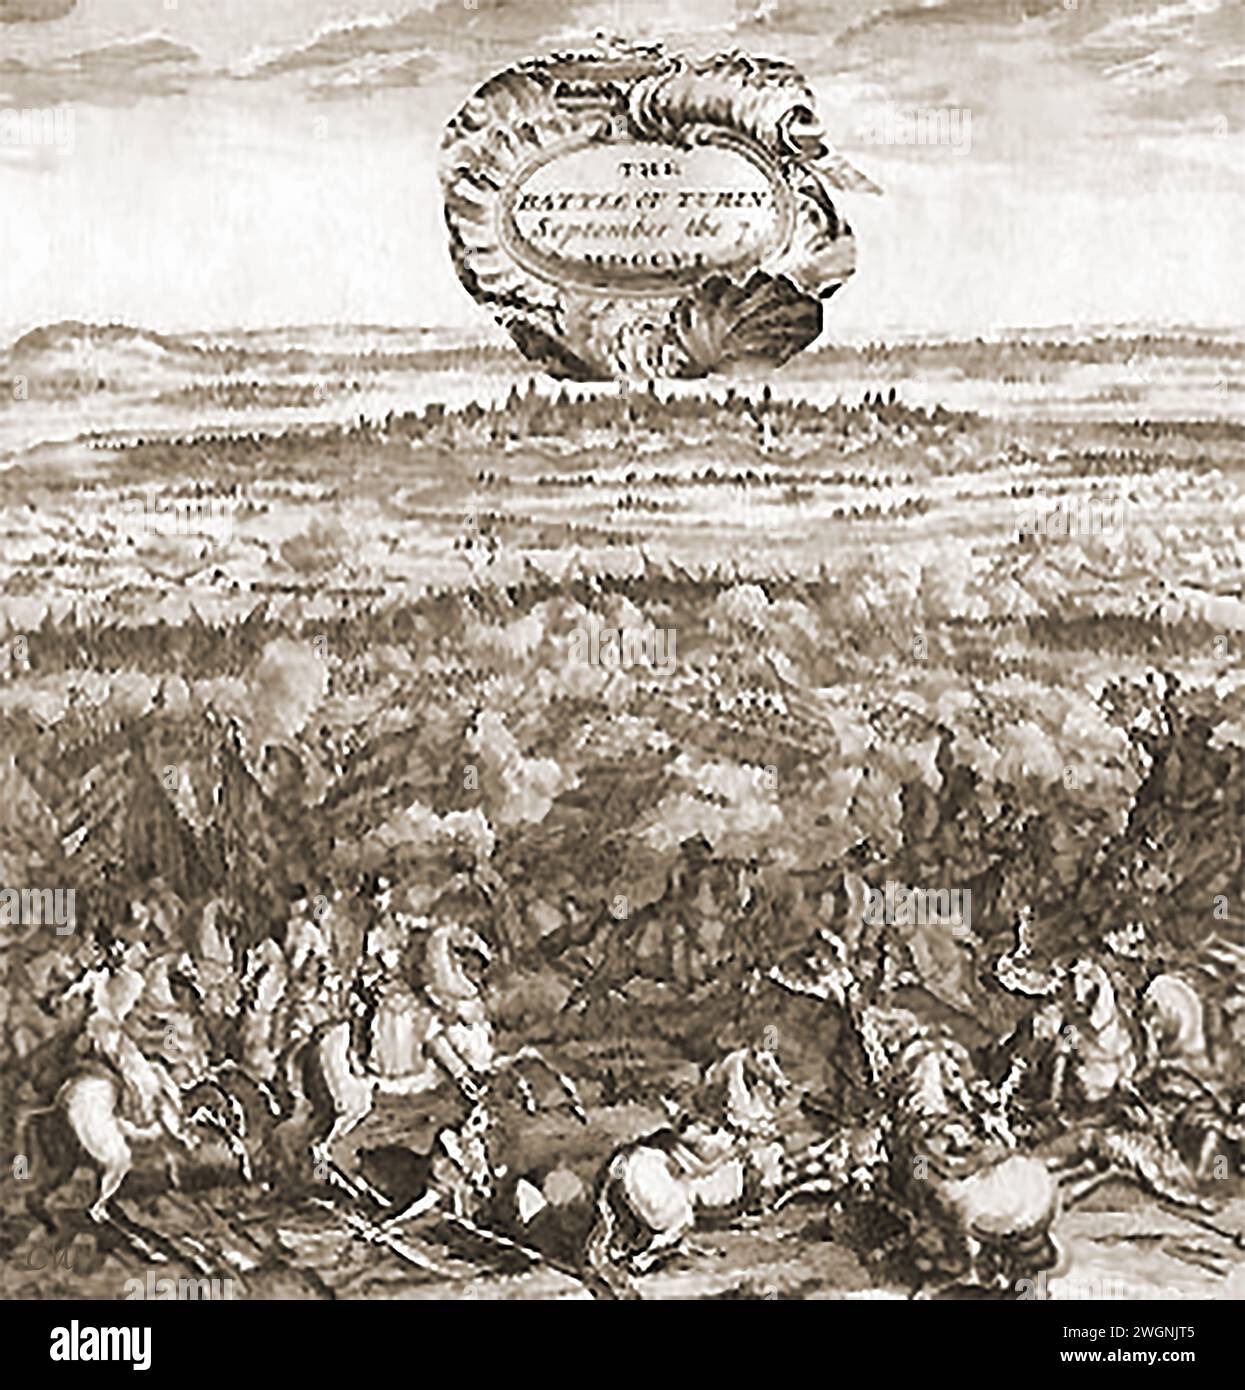 Ein Stich aus dem frühen 18. Jahrhundert, der die Schlacht von Turin zeigt - Una delle Prime incisioni secolo - mostra la battaglia di Torino del XVIII Stockfoto